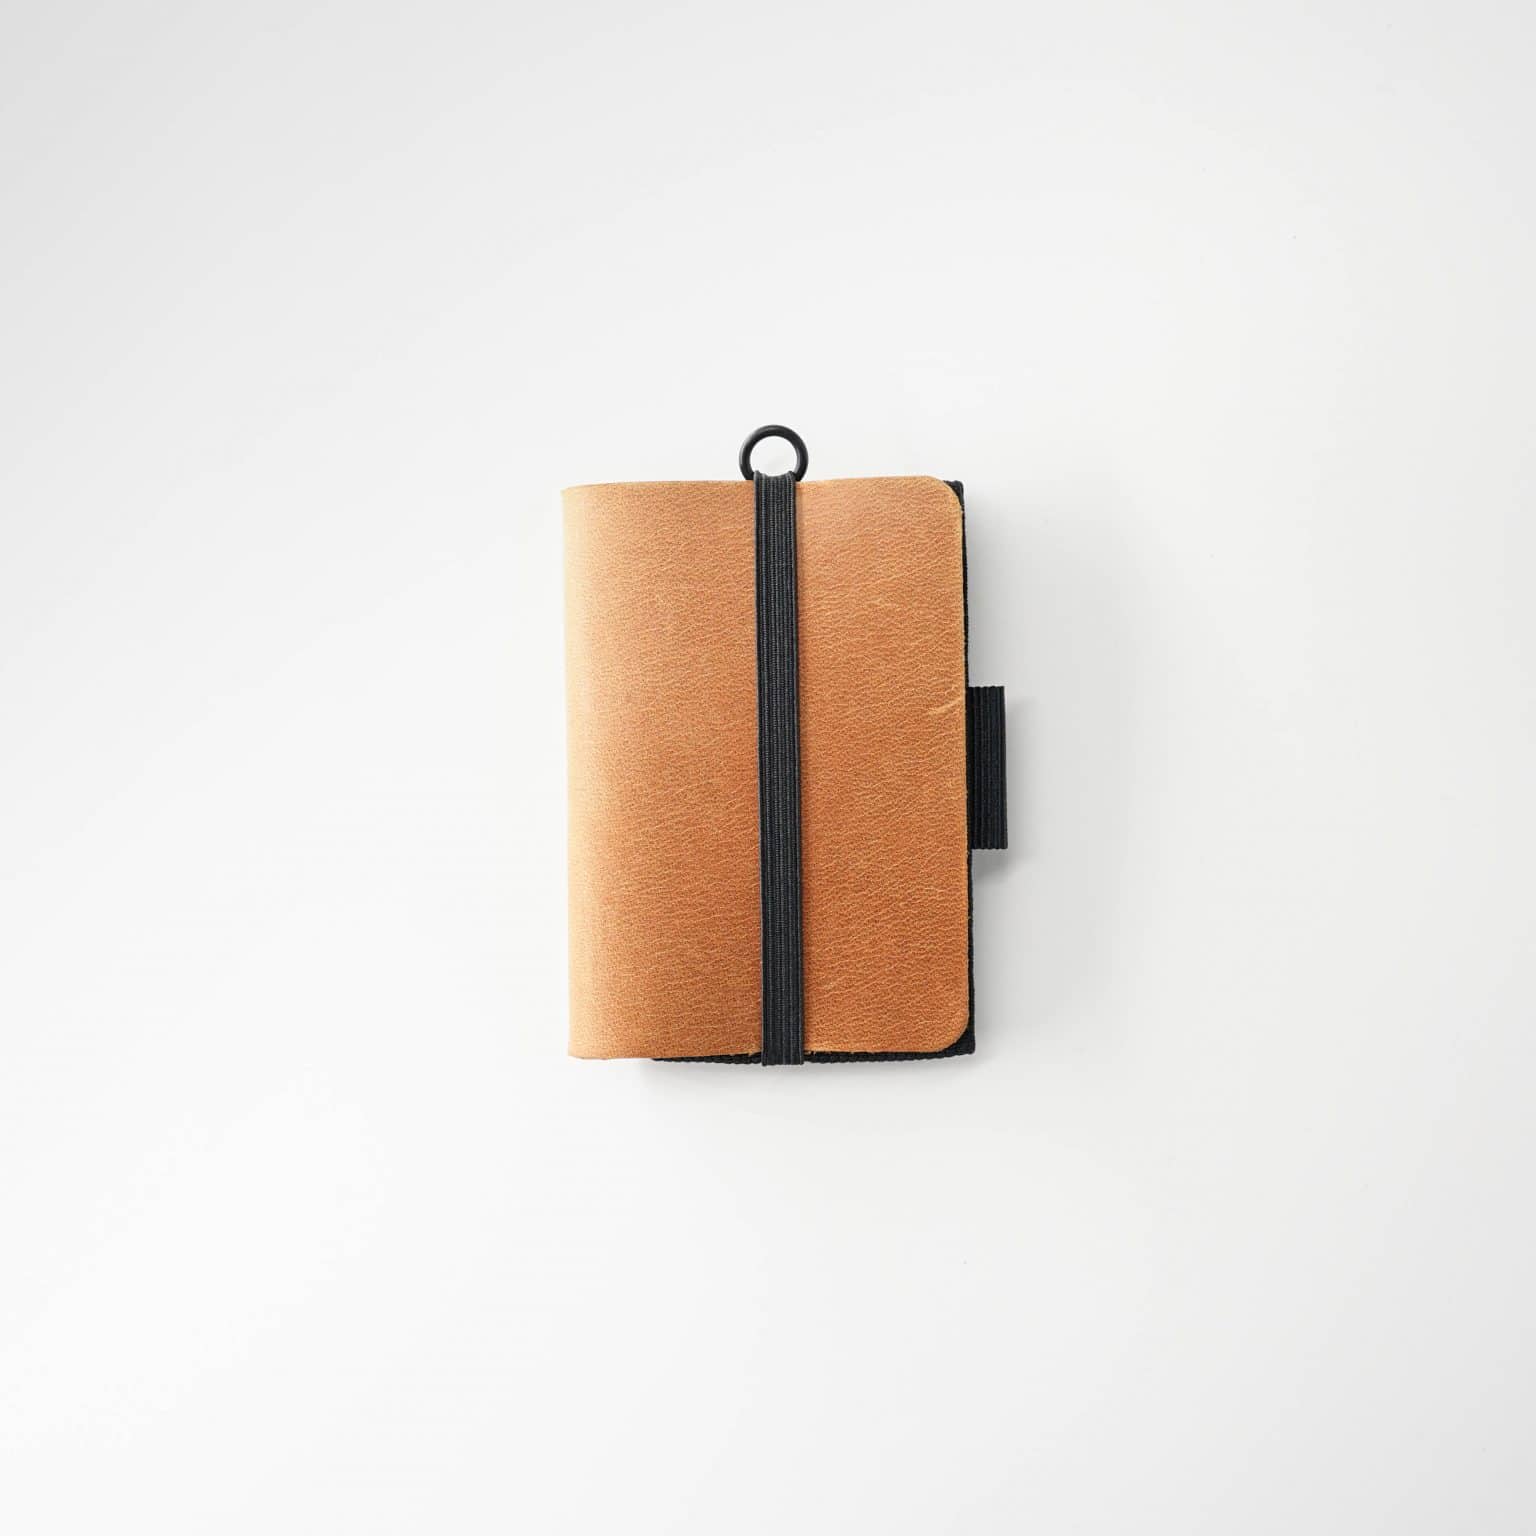 Minimalist carteira de couro com design inovador com aba de puxar.